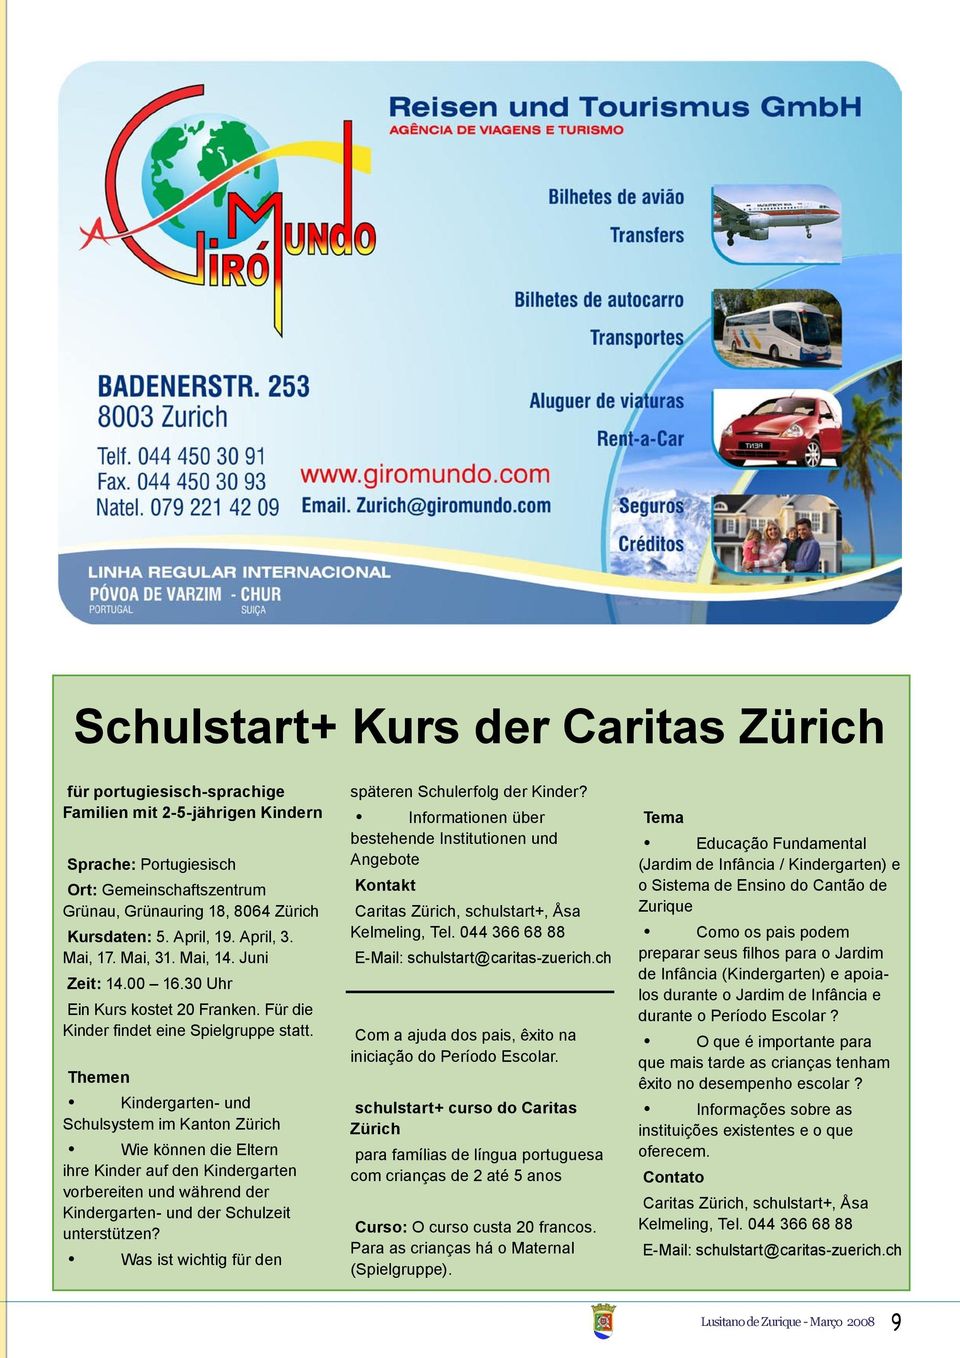 Themen Kindergarten- und Schulsystem im Kanton Zürich Wie können die Eltern ihre Kinder auf den Kindergarten vorbereiten und während der Kindergarten- und der Schulzeit unterstützen?